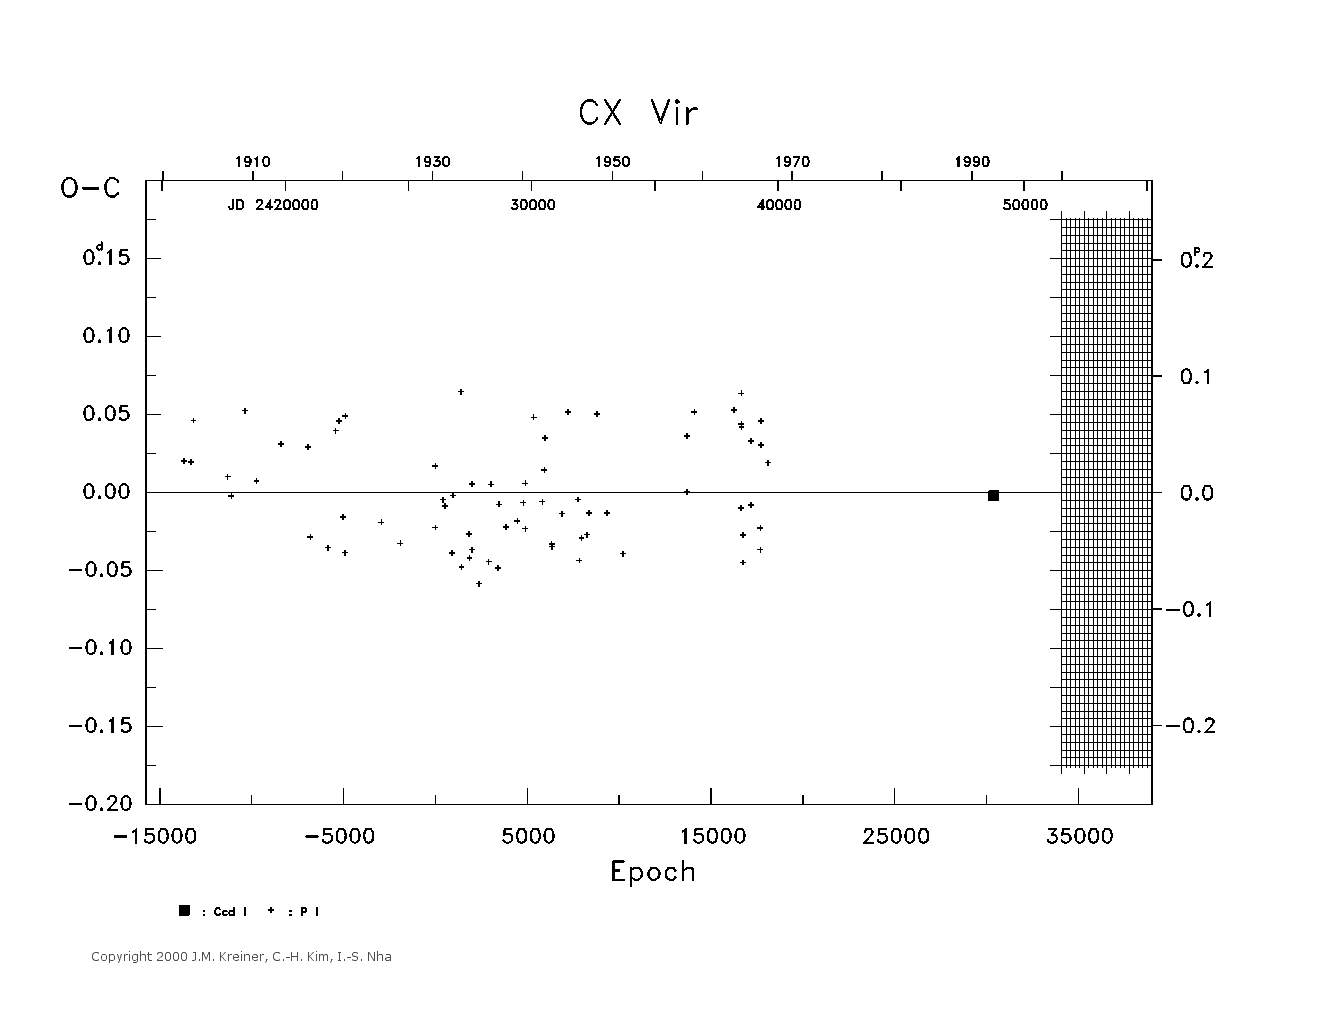 [IMAGE: large CX VIR O-C diagram]